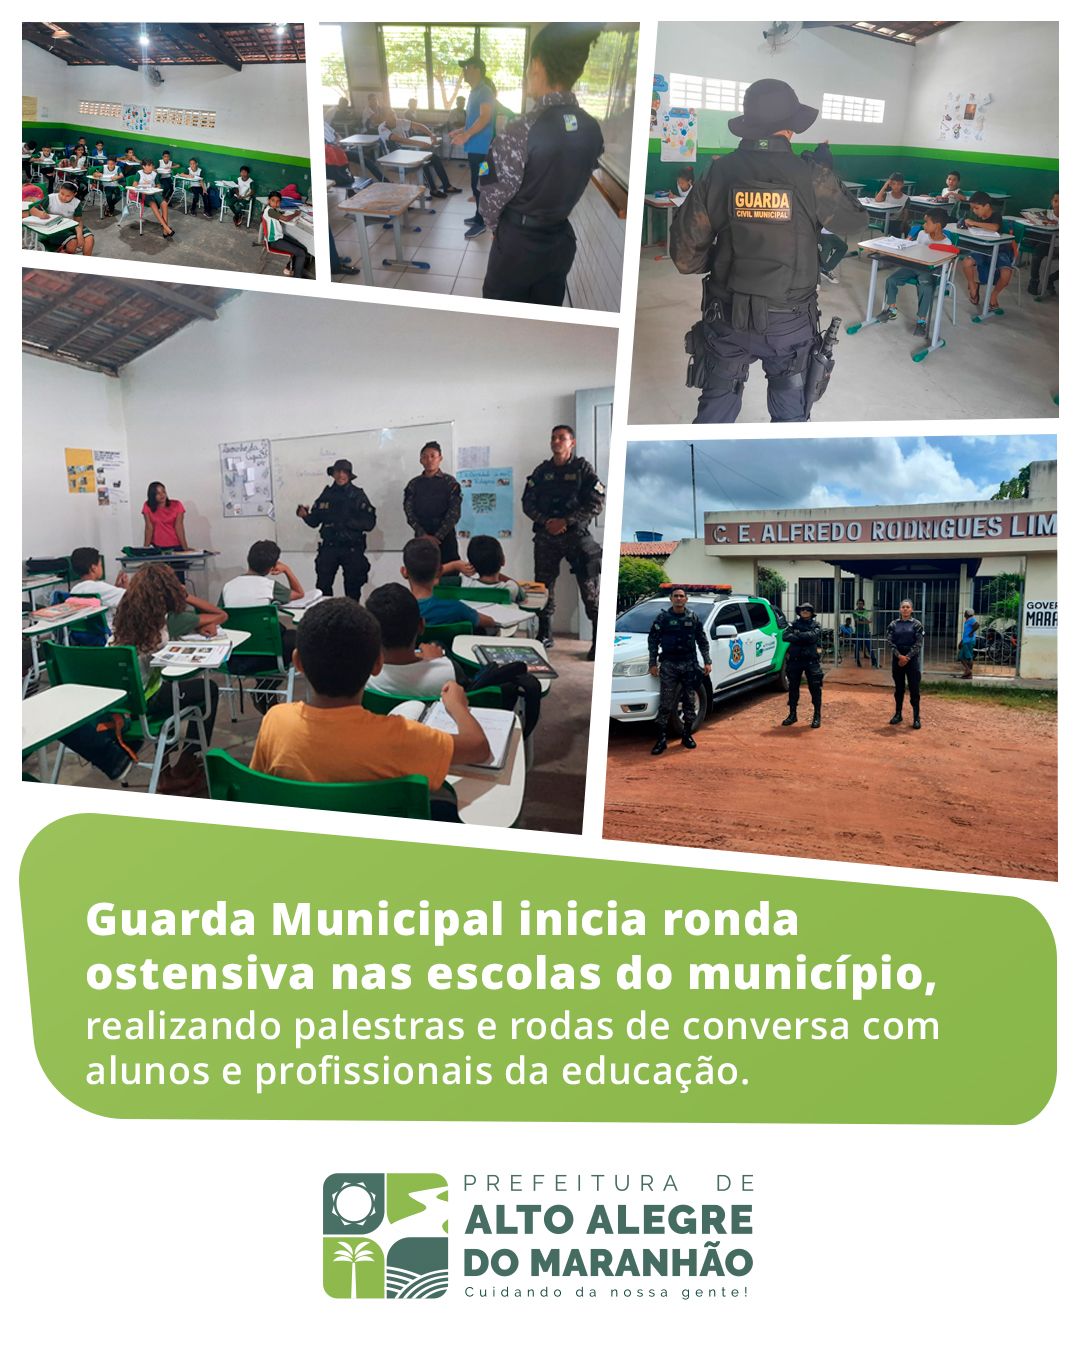 Guarda Municipal inicia ronda ostensiva e ações educativas em escolas do município